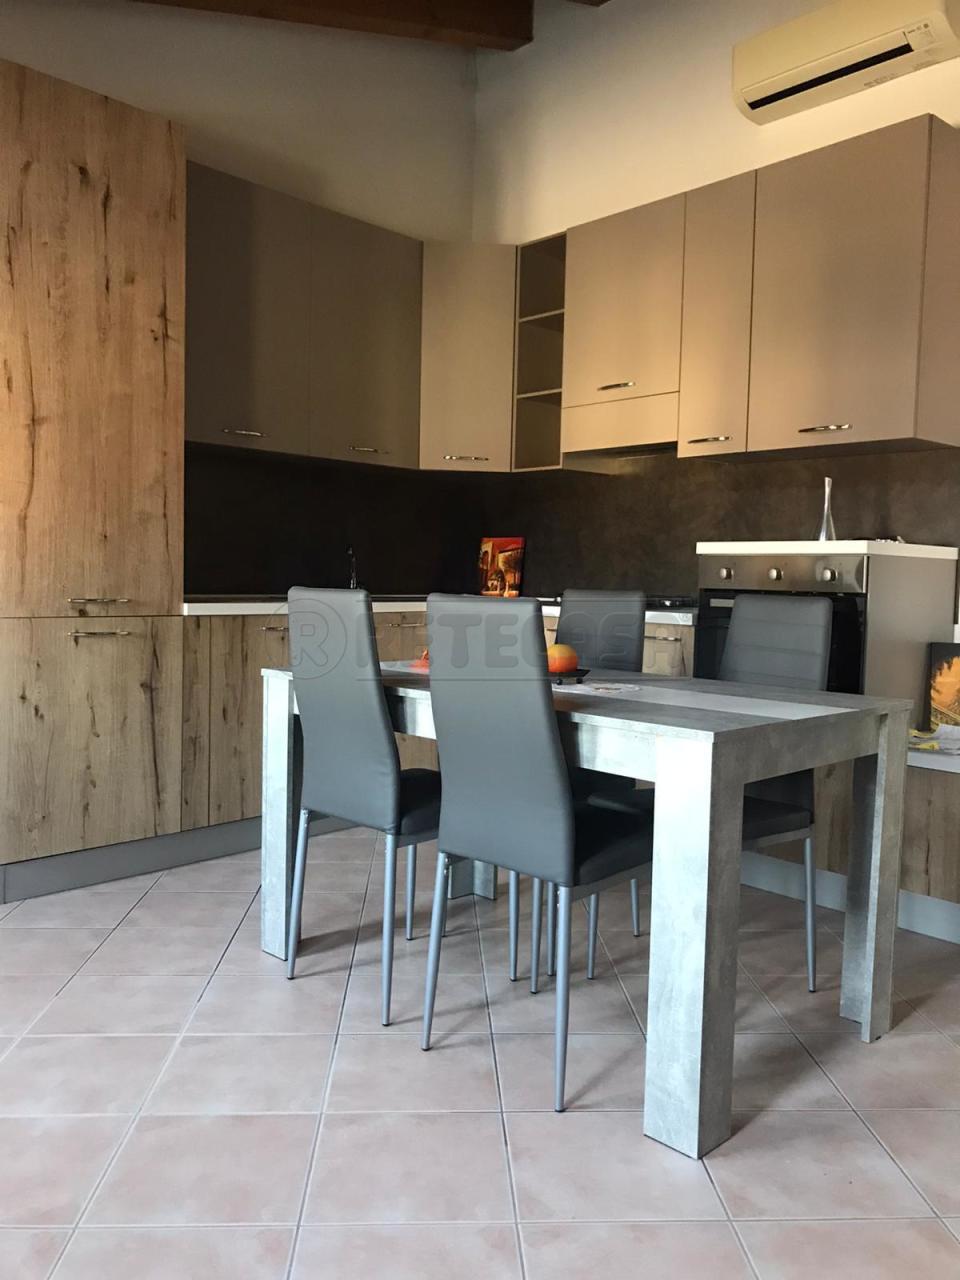 Appartamento in vendita a Montegalda, 3 locali, prezzo € 75.000 | PortaleAgenzieImmobiliari.it